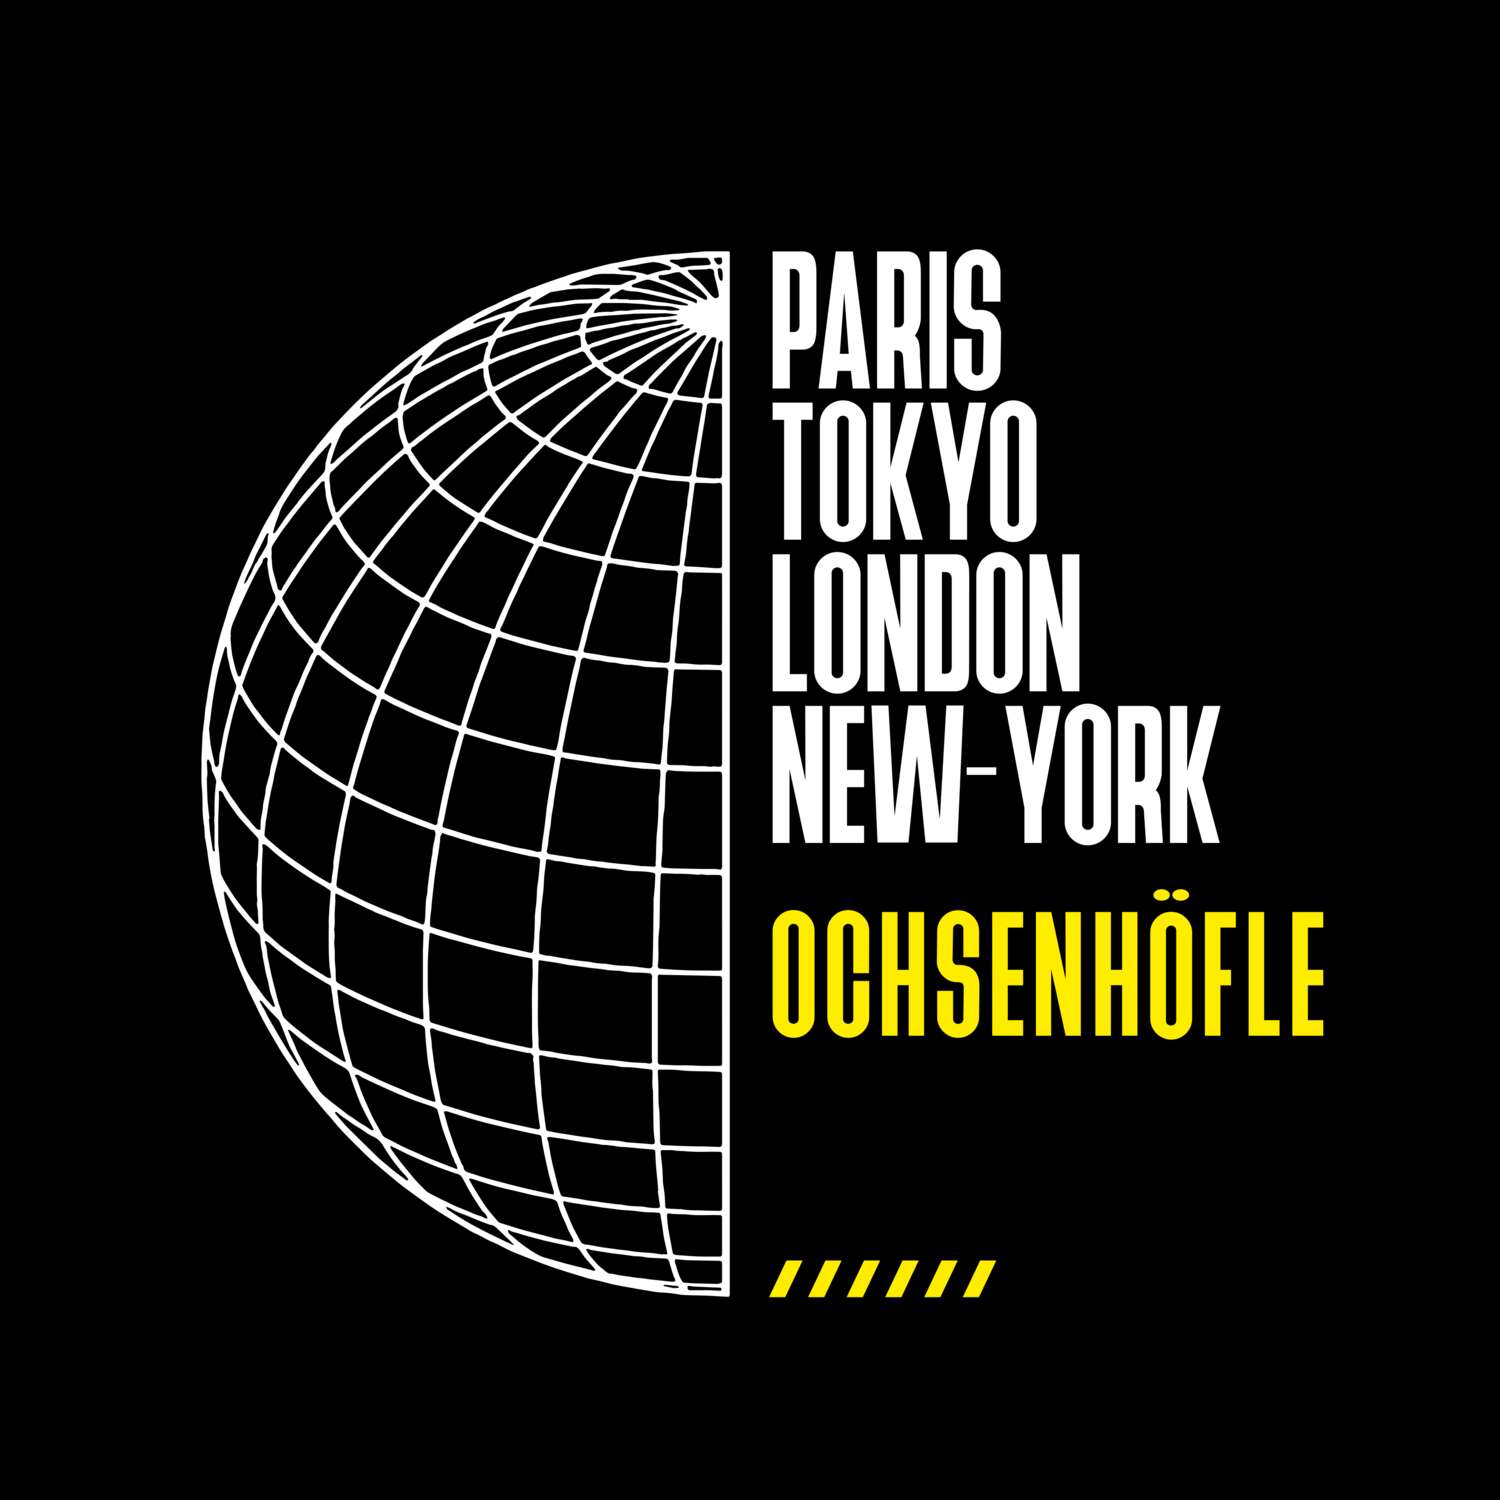 Ochsenhöfle T-Shirt »Paris Tokyo London«